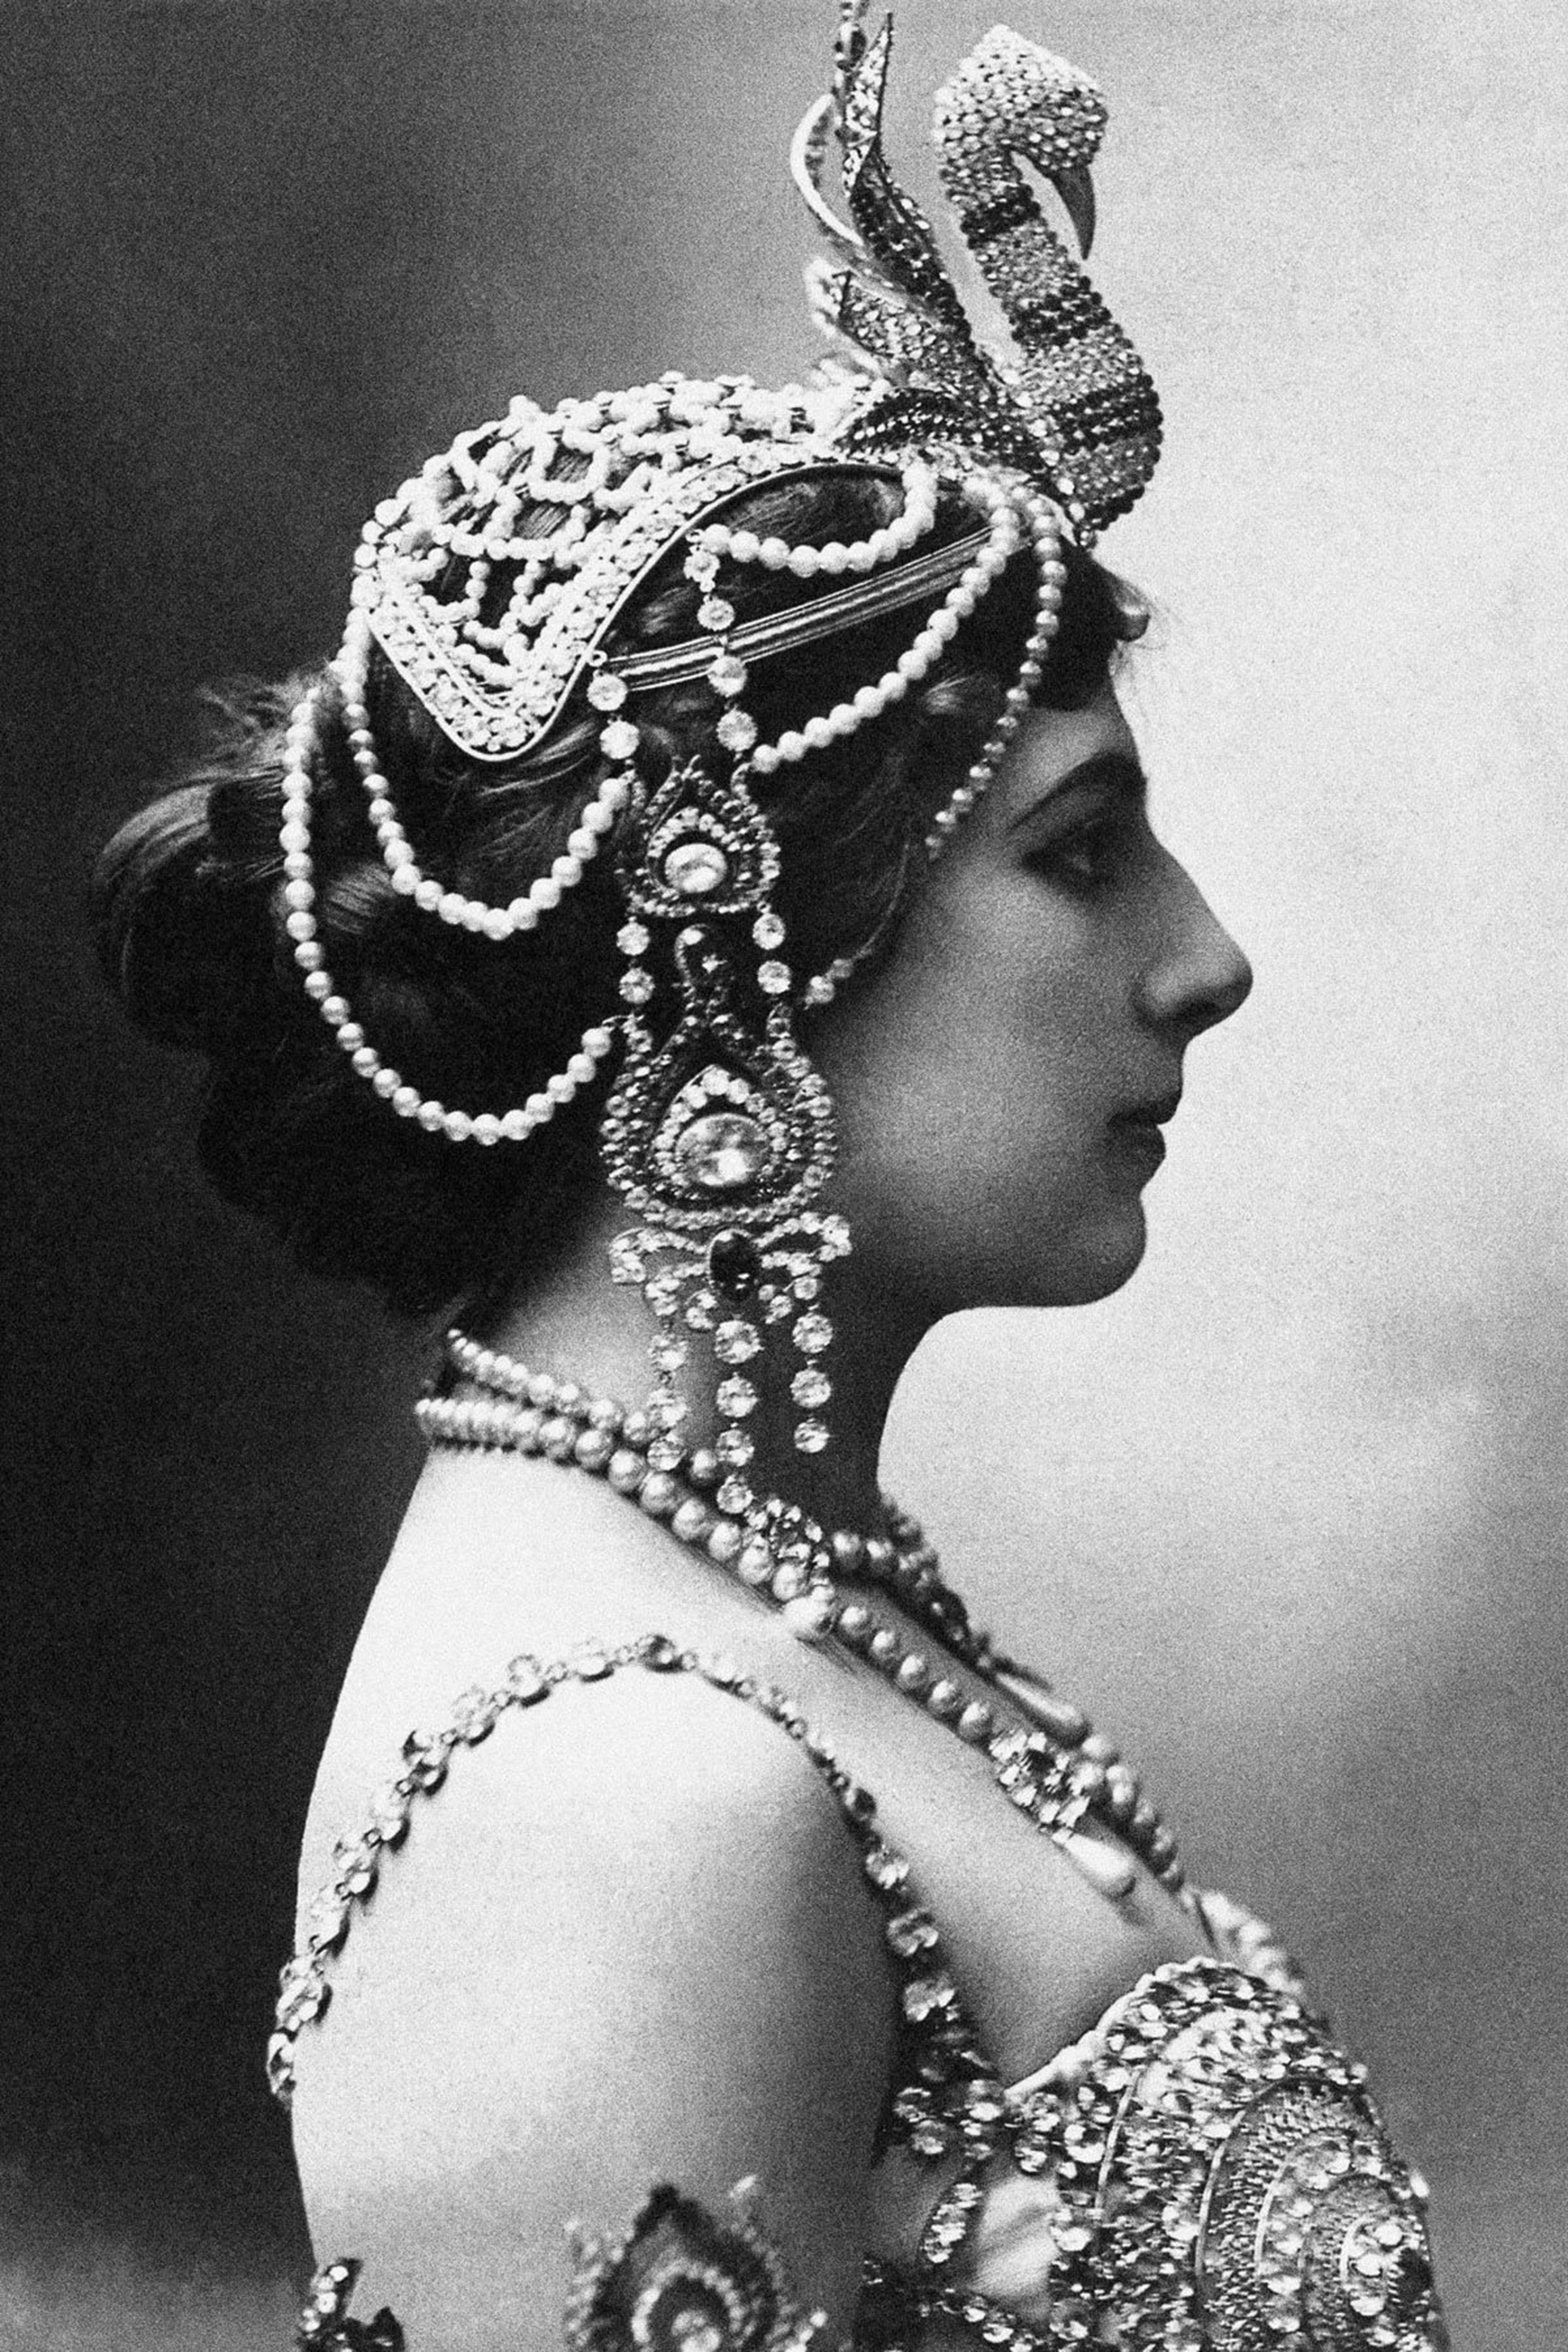 Margaretha se bautizó como Mata Hari, un nombre hindú que significa "Sol" u "Ojo de la Aurora".